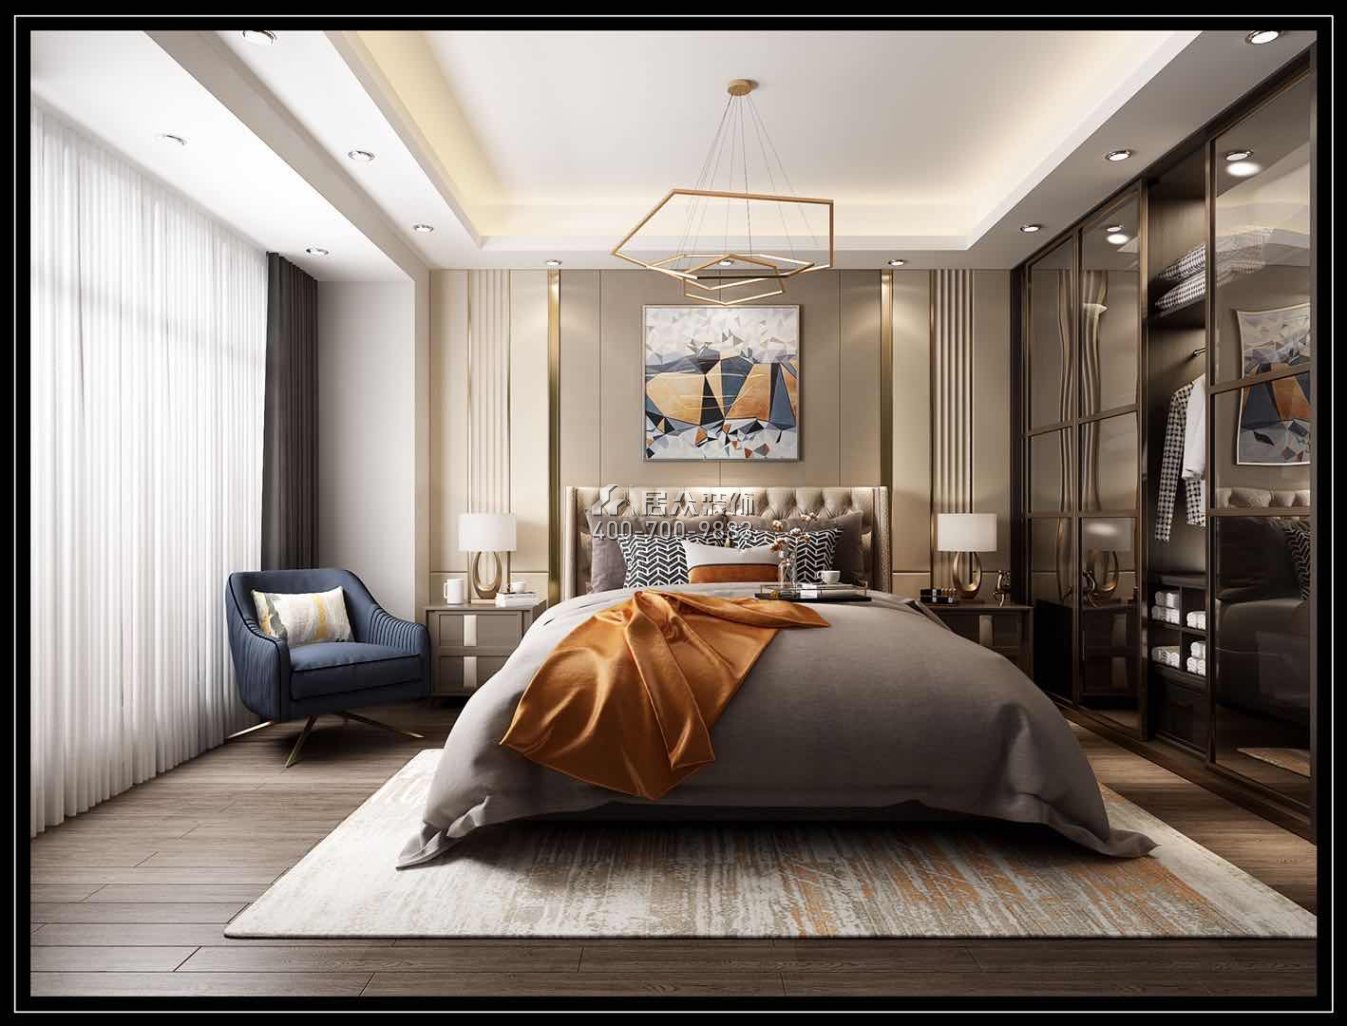 星城翠瓏灣150平方米現代簡約風格平層戶型臥室裝修效果圖